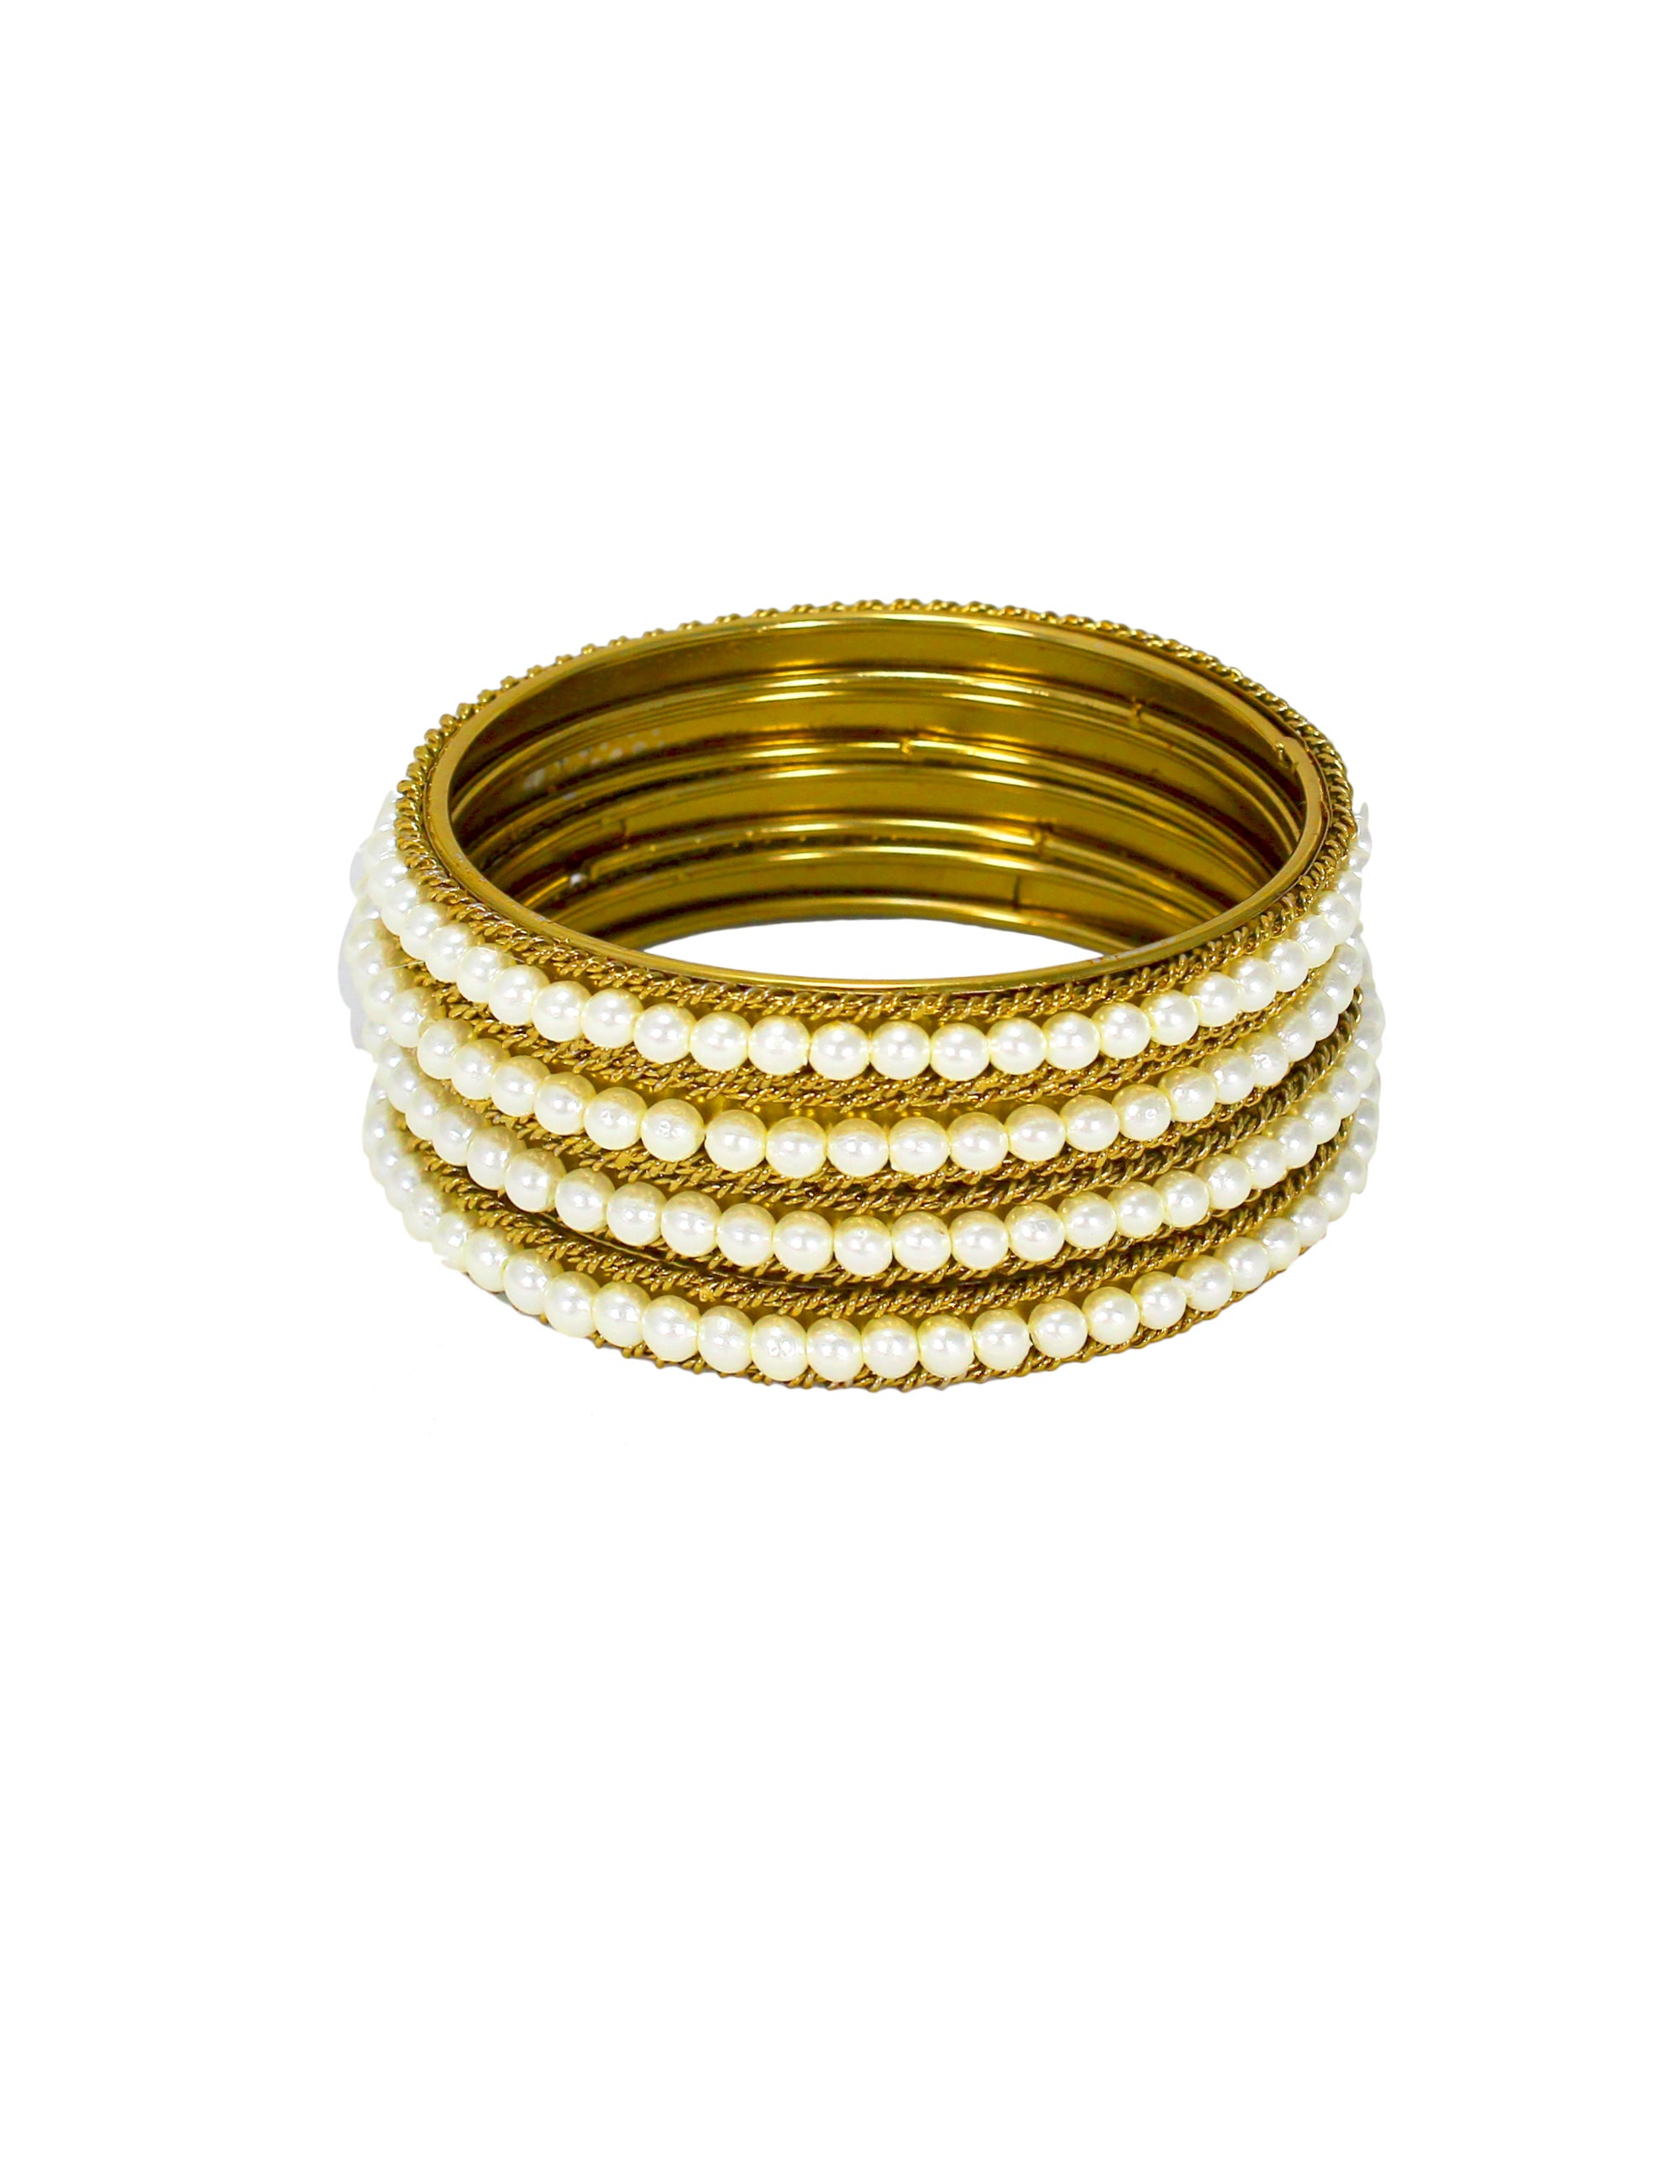 Abhinn Beautiful Golden Plated Bangles Set with Spiral Net Design For Women